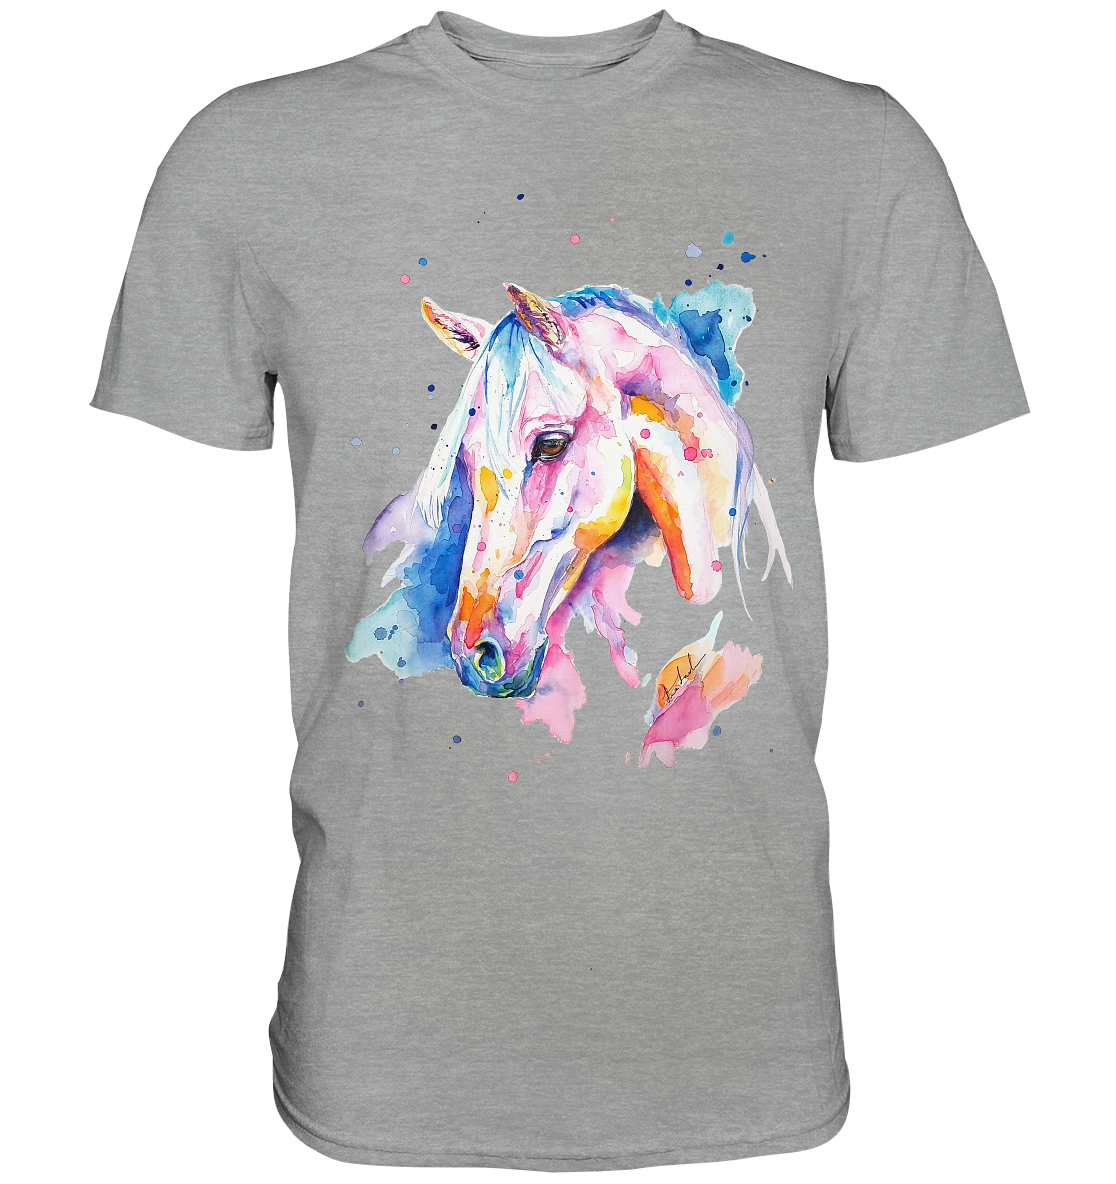 Buntes Pferd - Classic Shirt